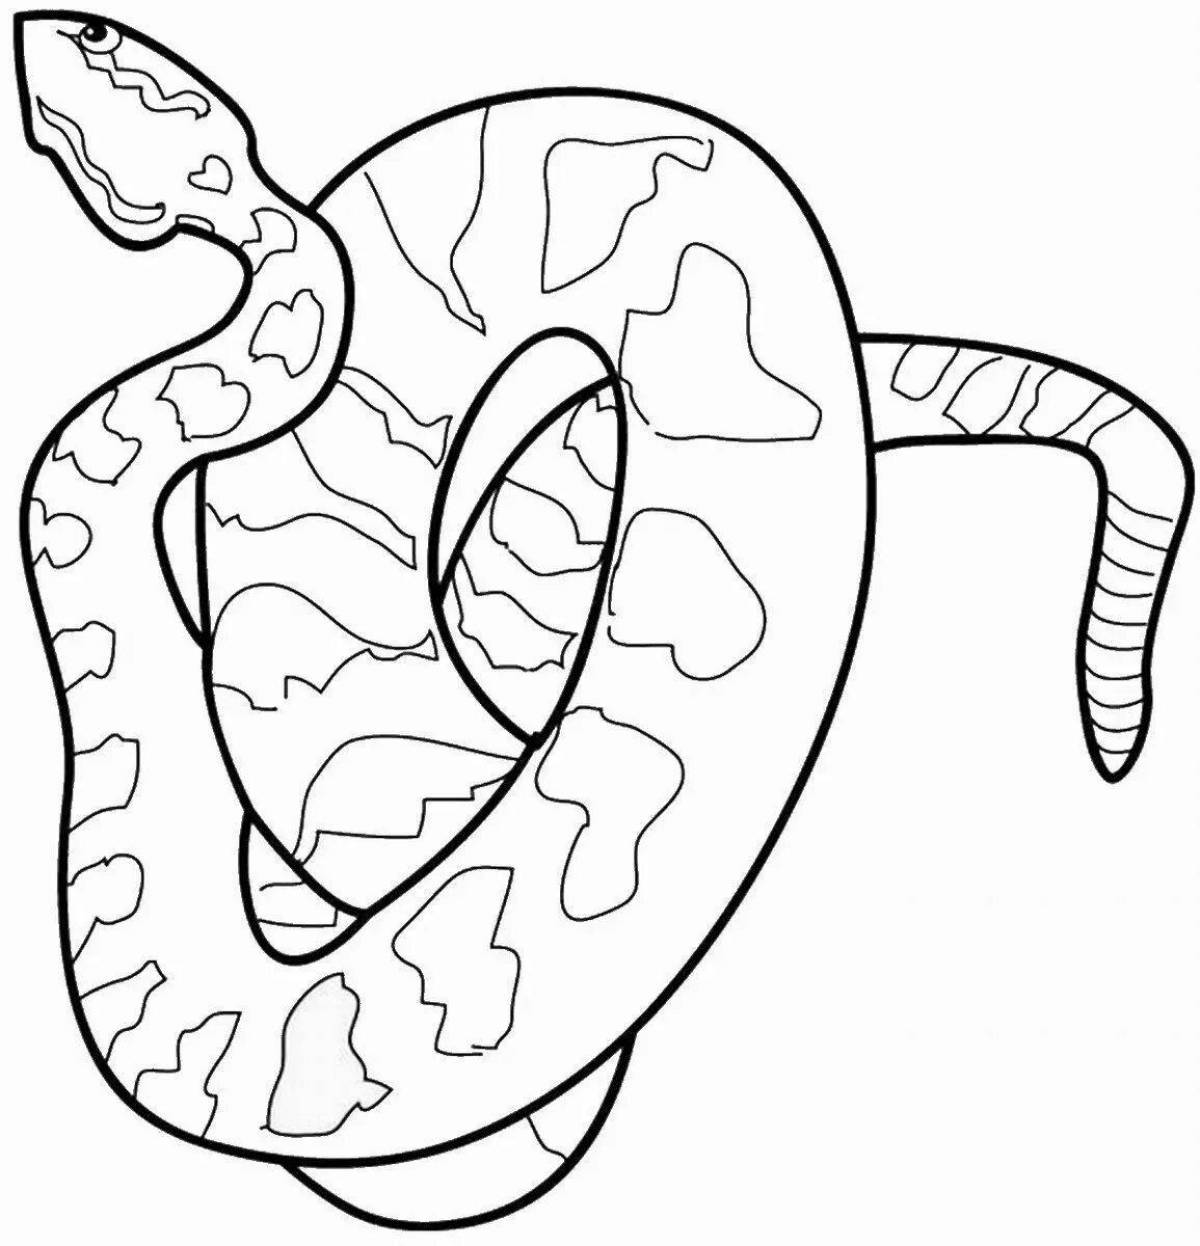 Python #11